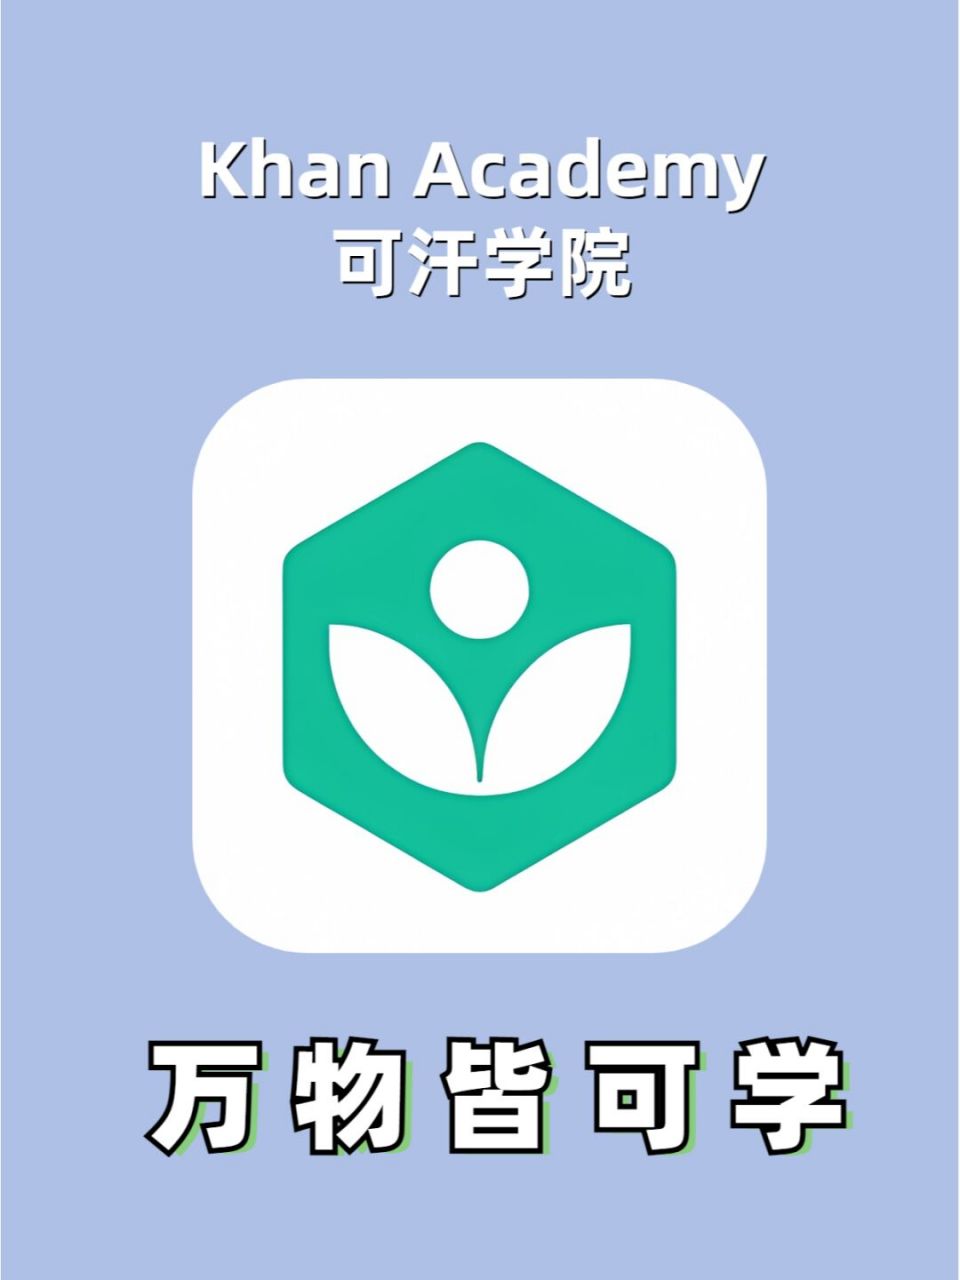 78可汗学院(khan academy), 一个非盈利组织制作的学习app